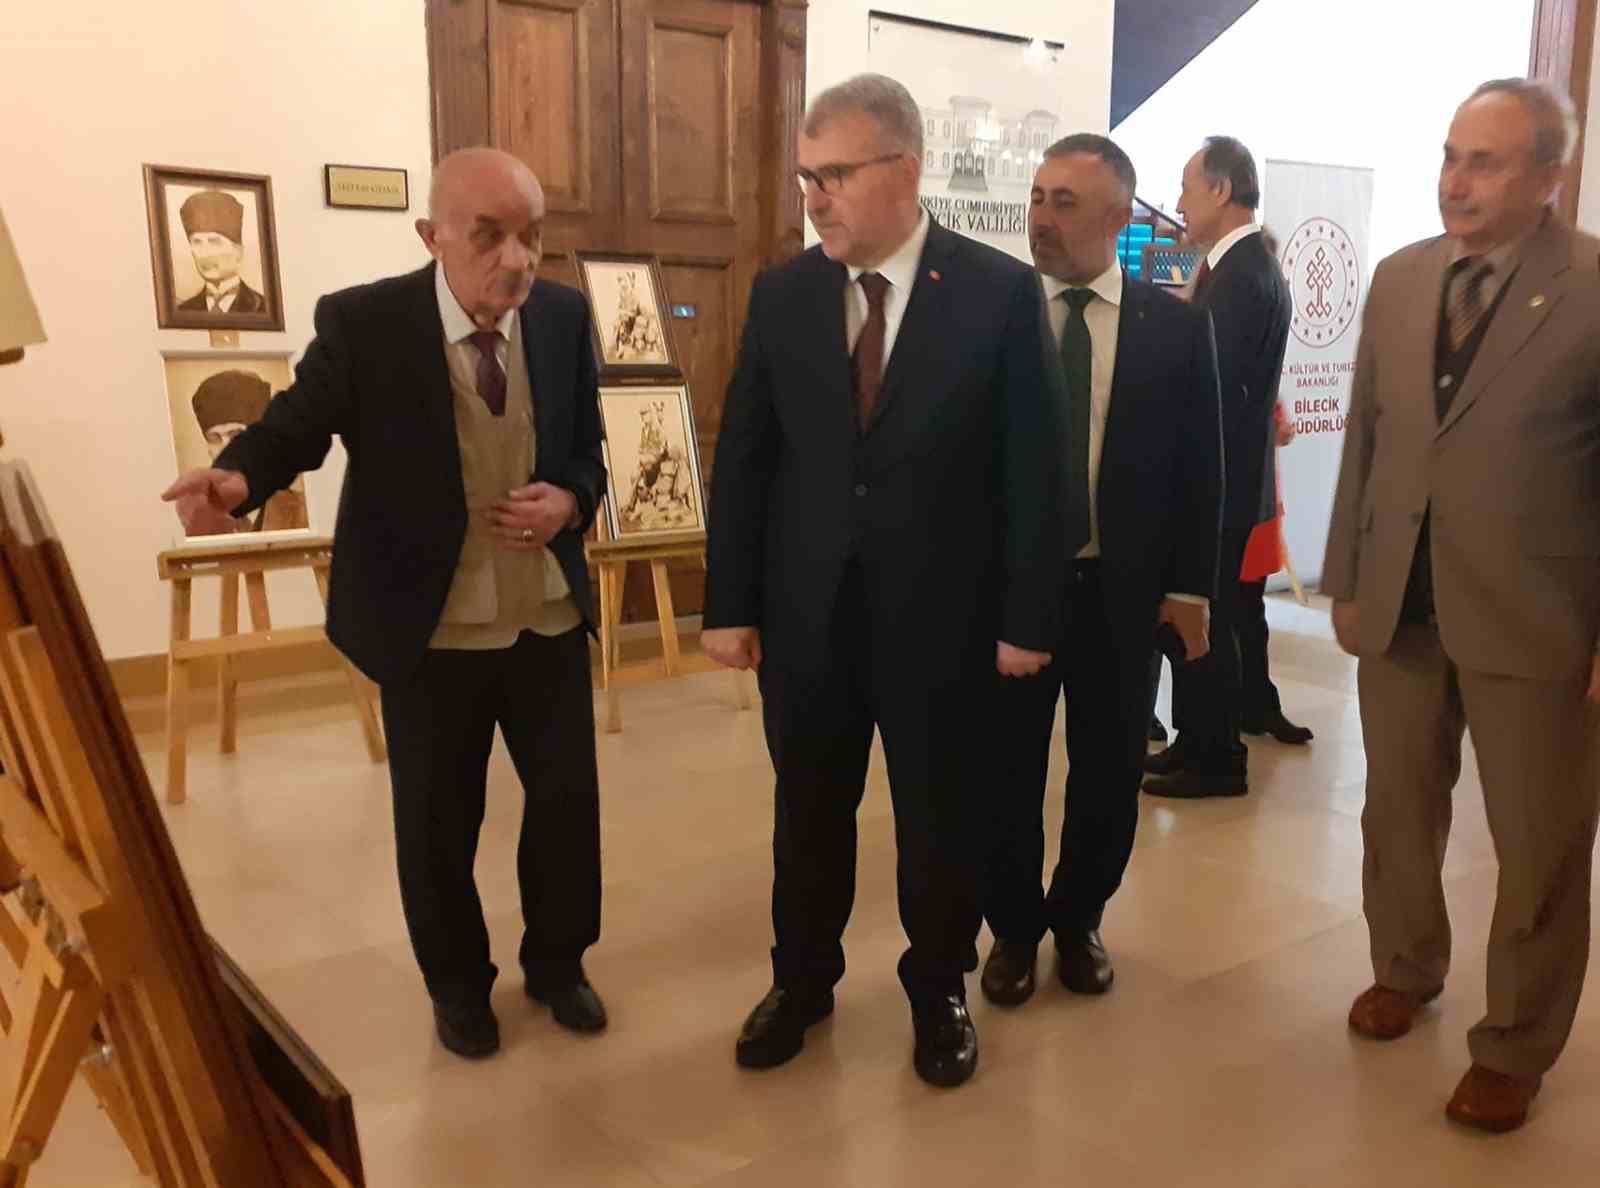 Bilecik’te ’Atatürk’ konulu resim sergisi açıldı